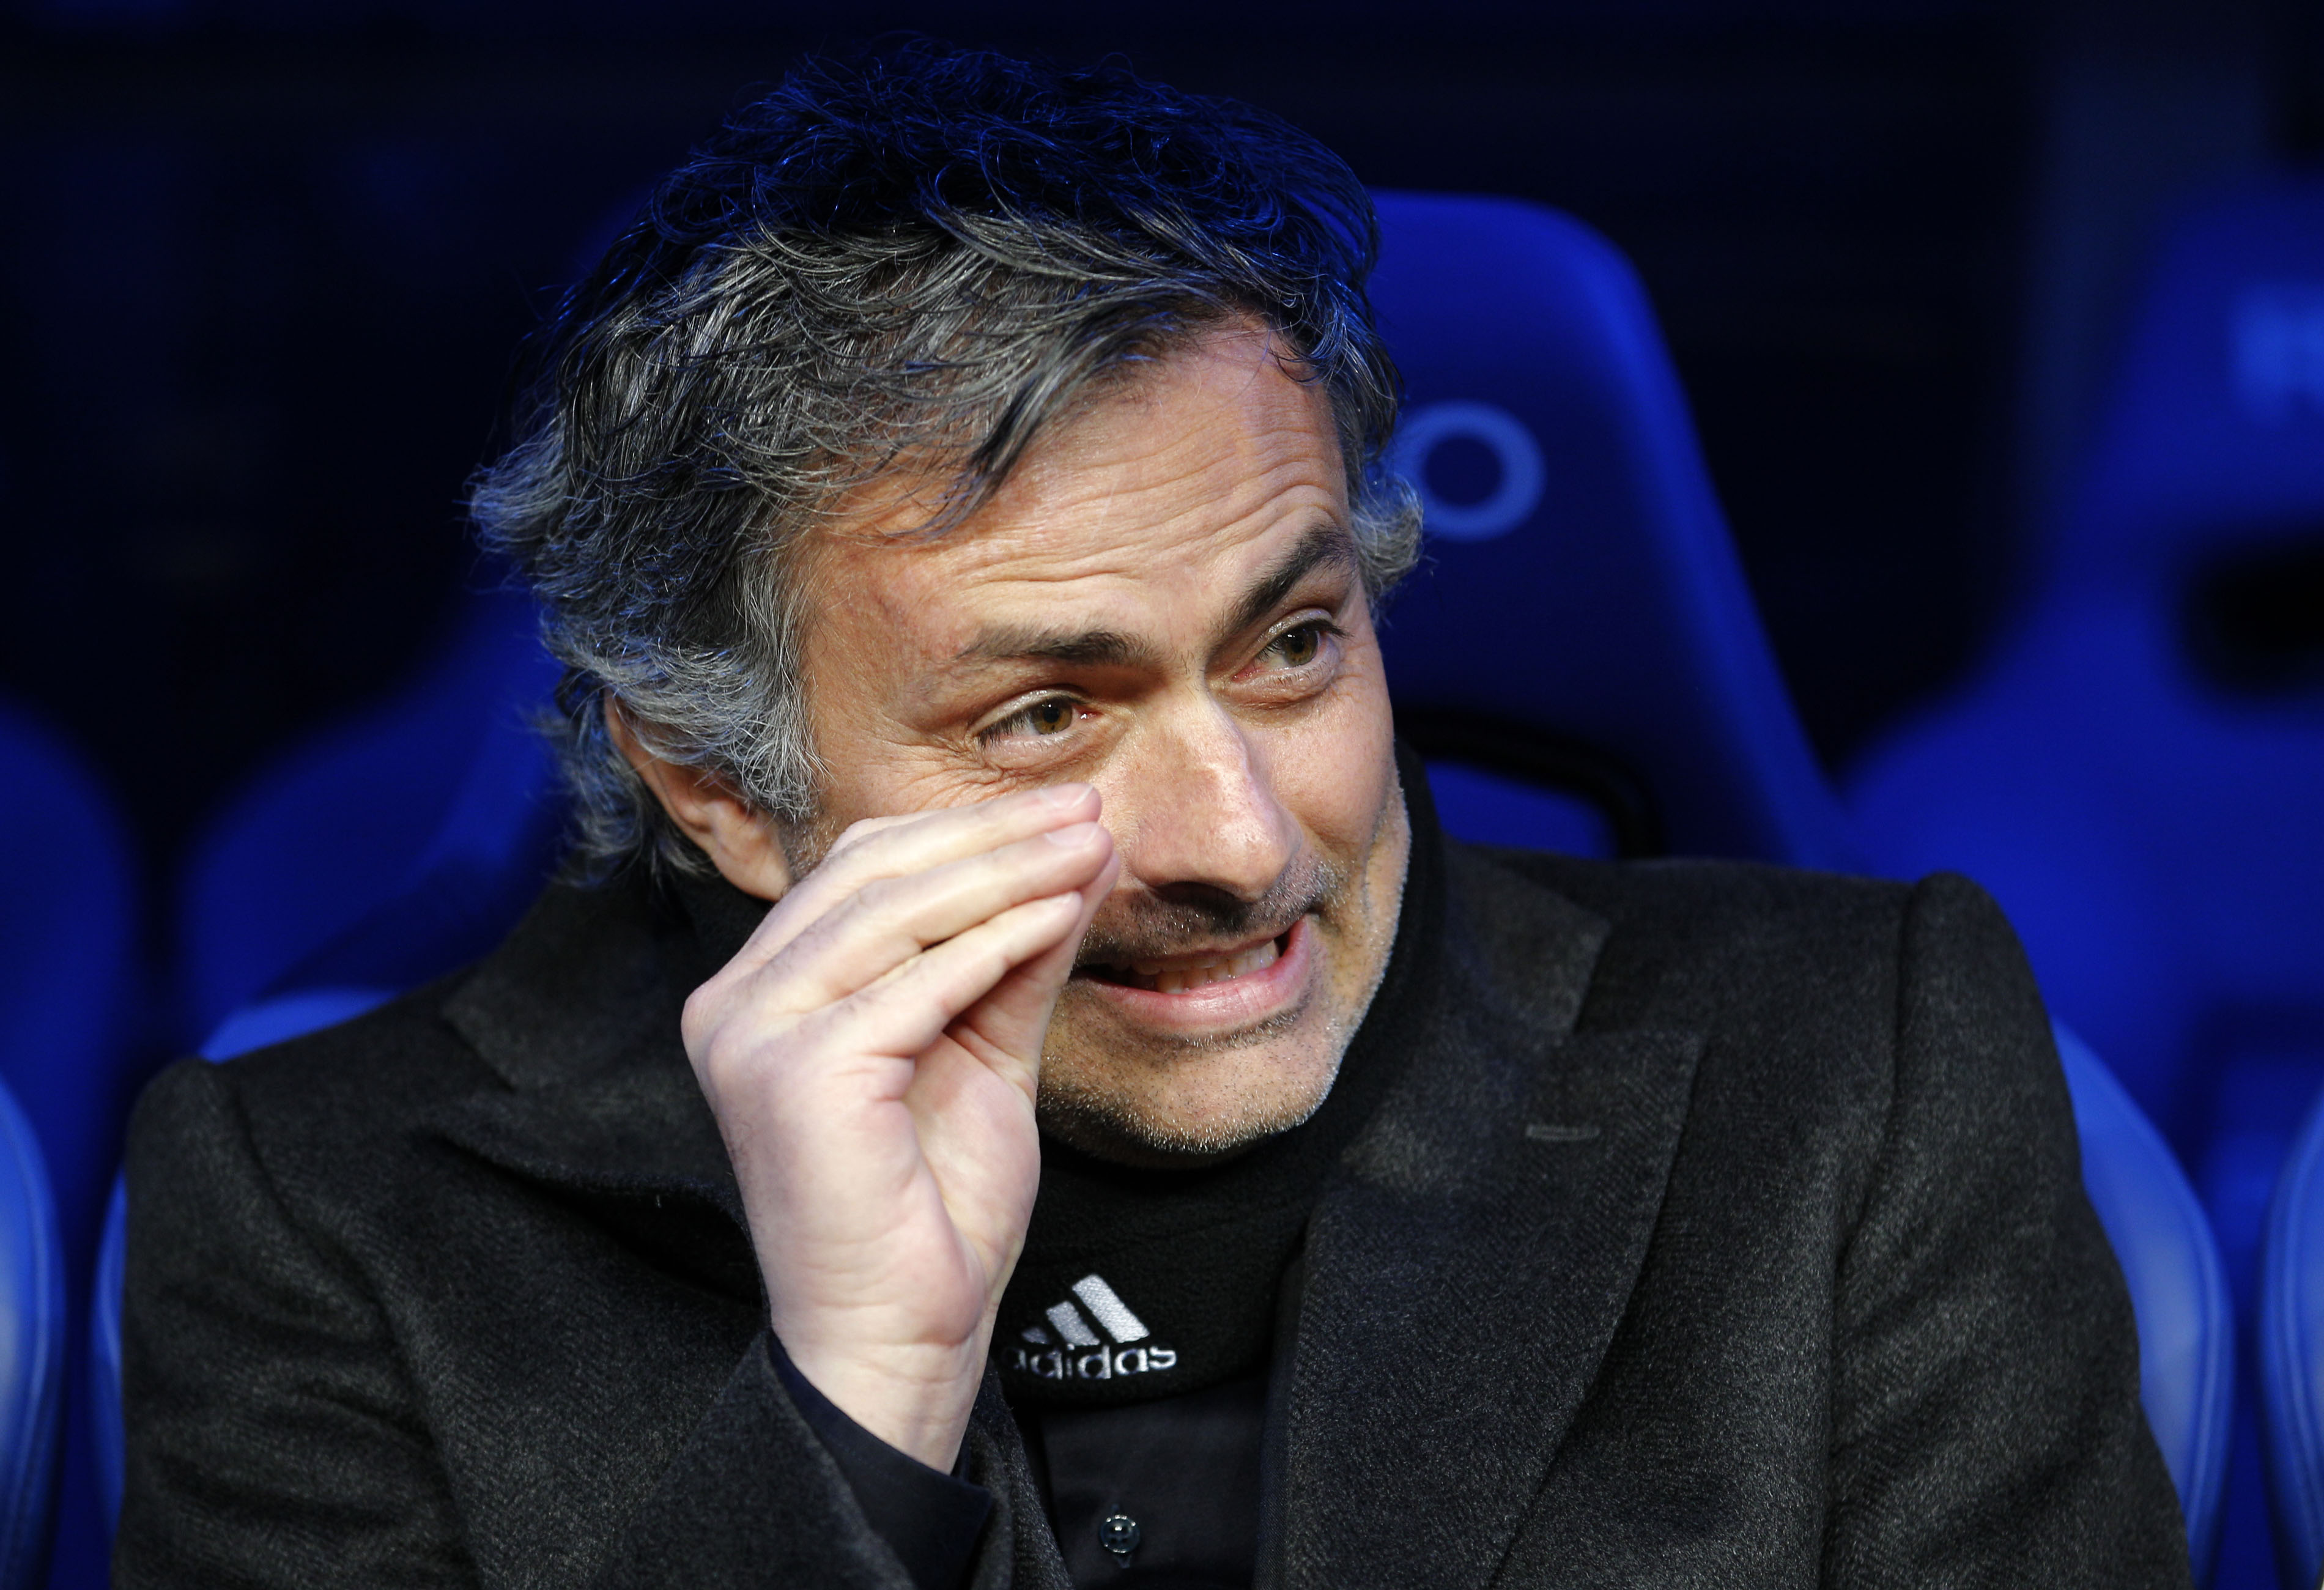 José Mourinho ska enligt Sandro Rosell tjäna avsevärt mycket mer pengar än sin motpart i Barcelona.